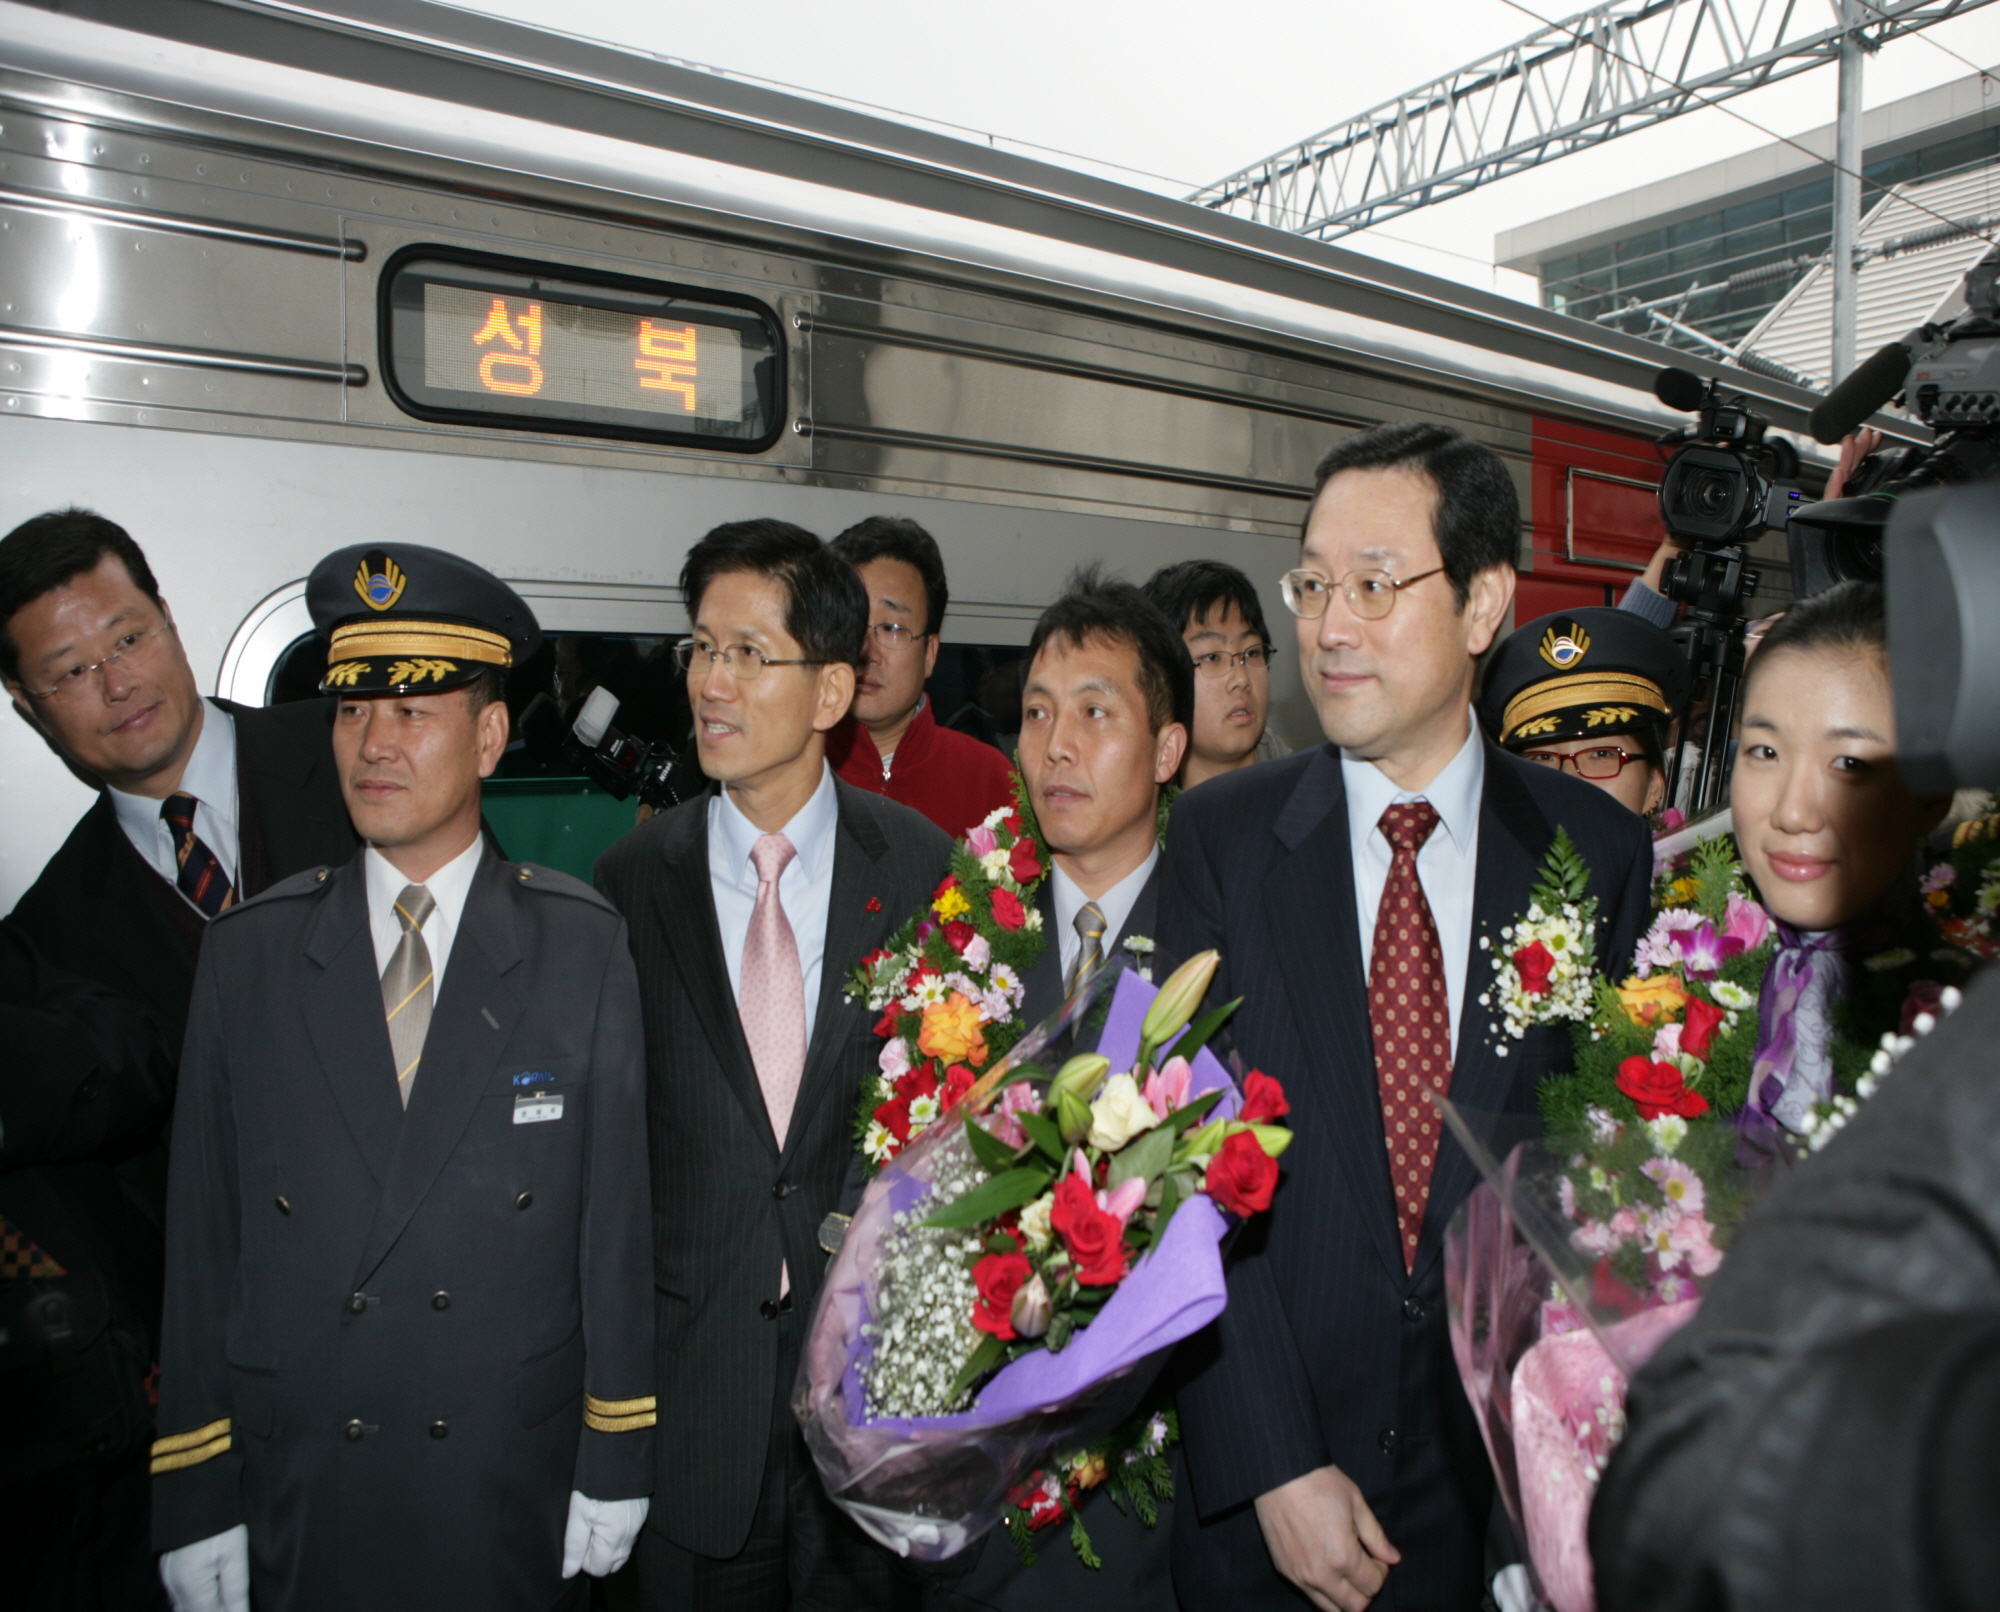 의정부-동두천간 전철 개통식 (2006.12.18)